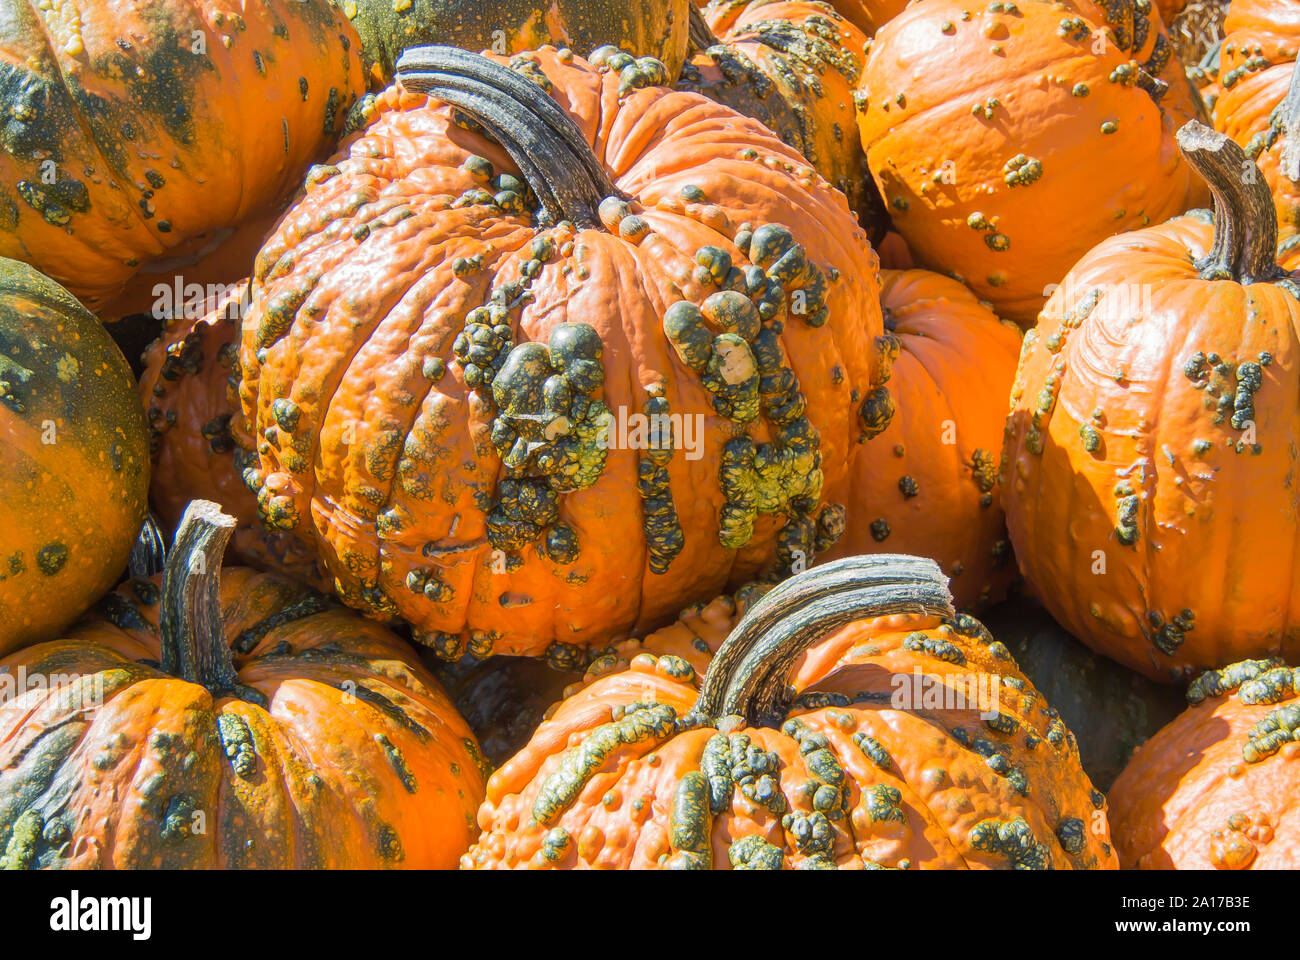 Knucklehead Pumpkins on Display Stock Photo